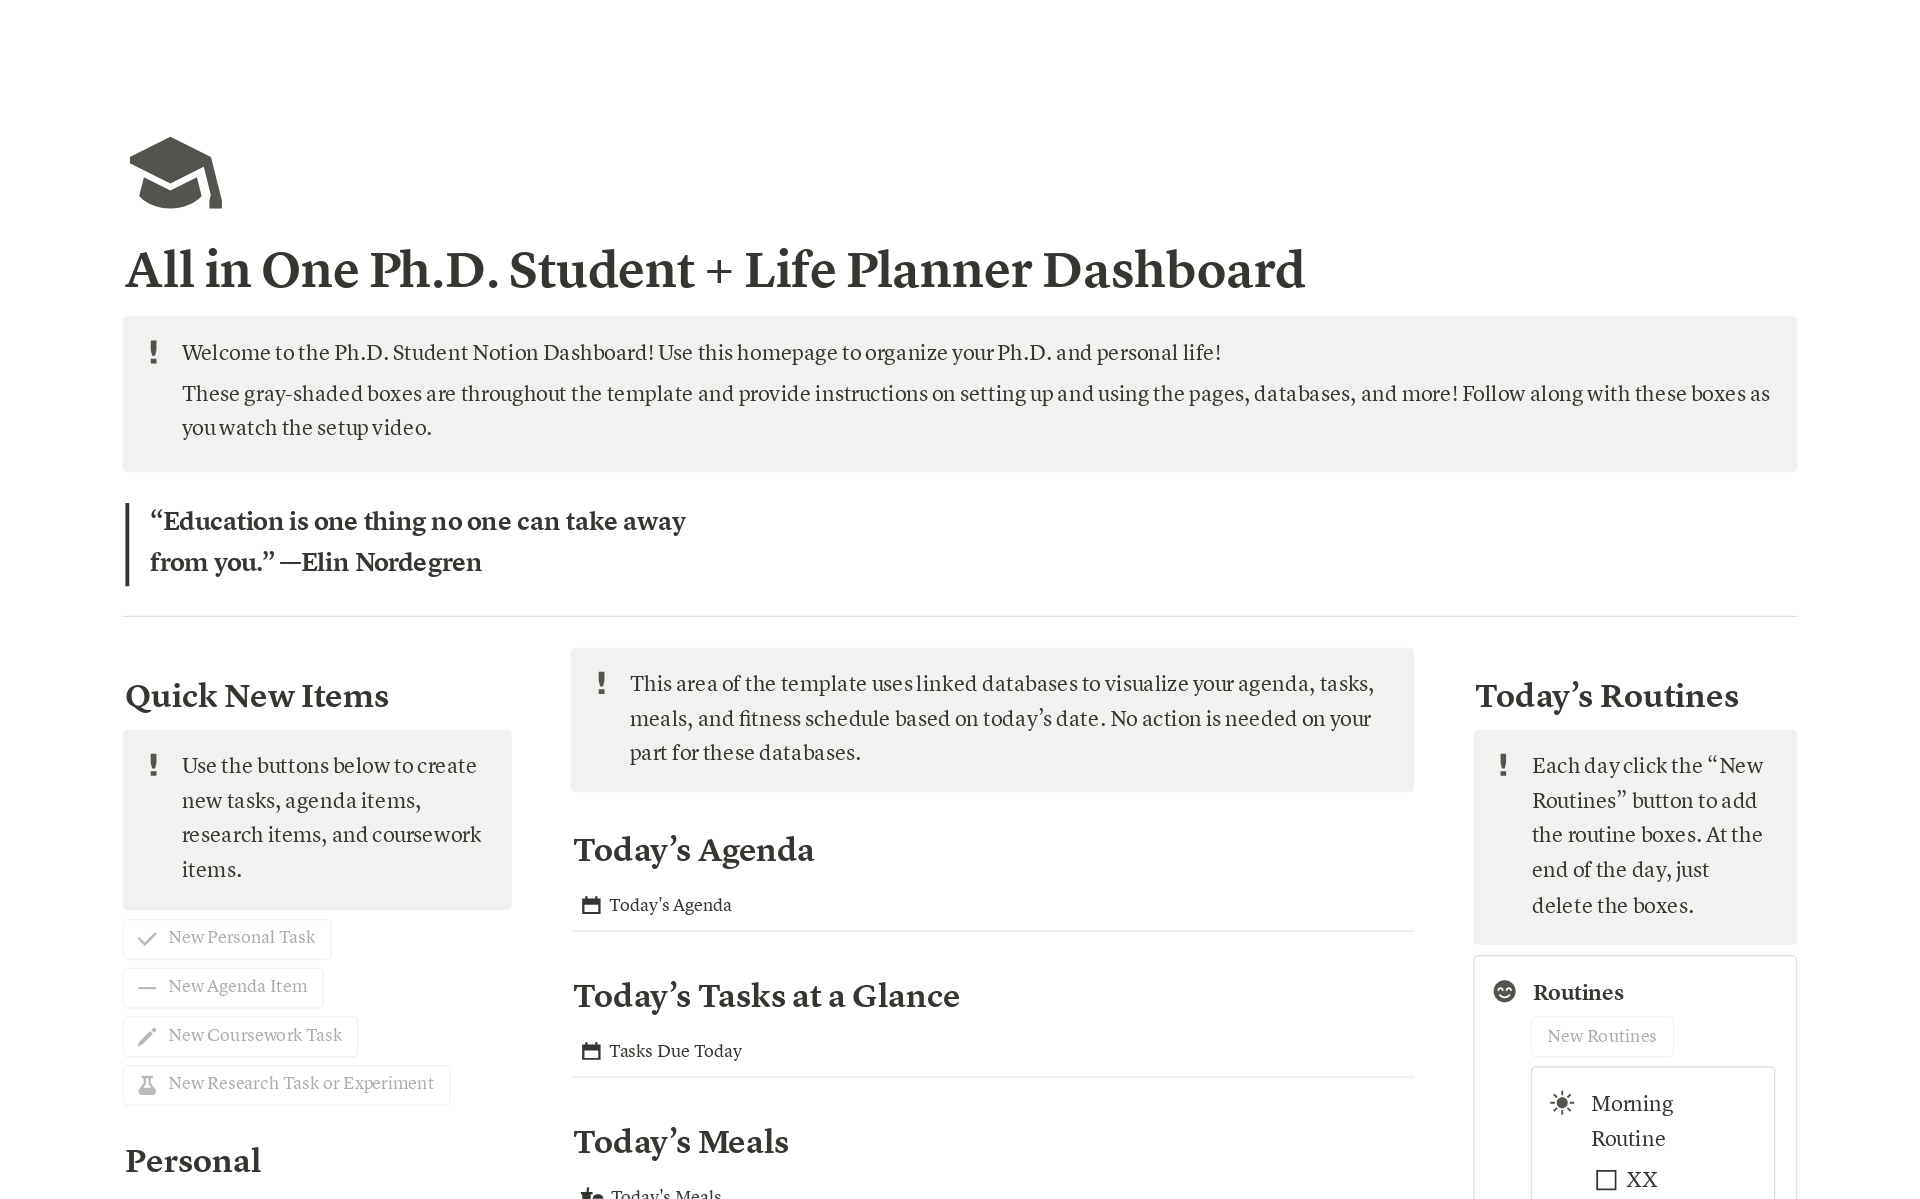 Eine Vorlagenvorschau für All-In-One Graduate Student Notion Dashboard